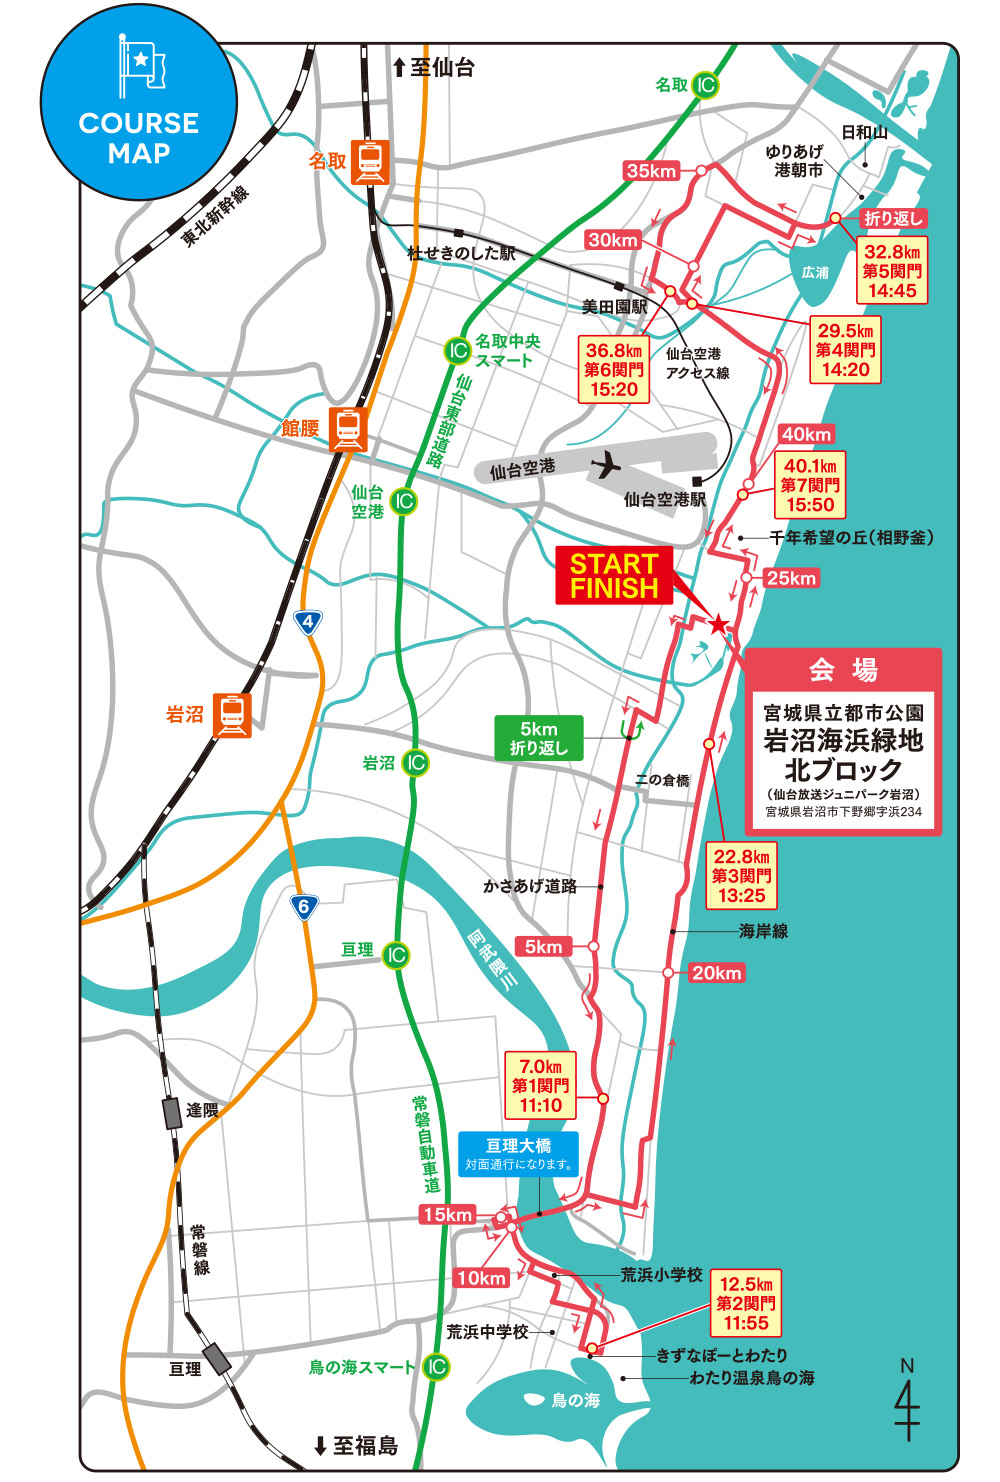 東北・みやぎ復興マラソン2018コースマップ